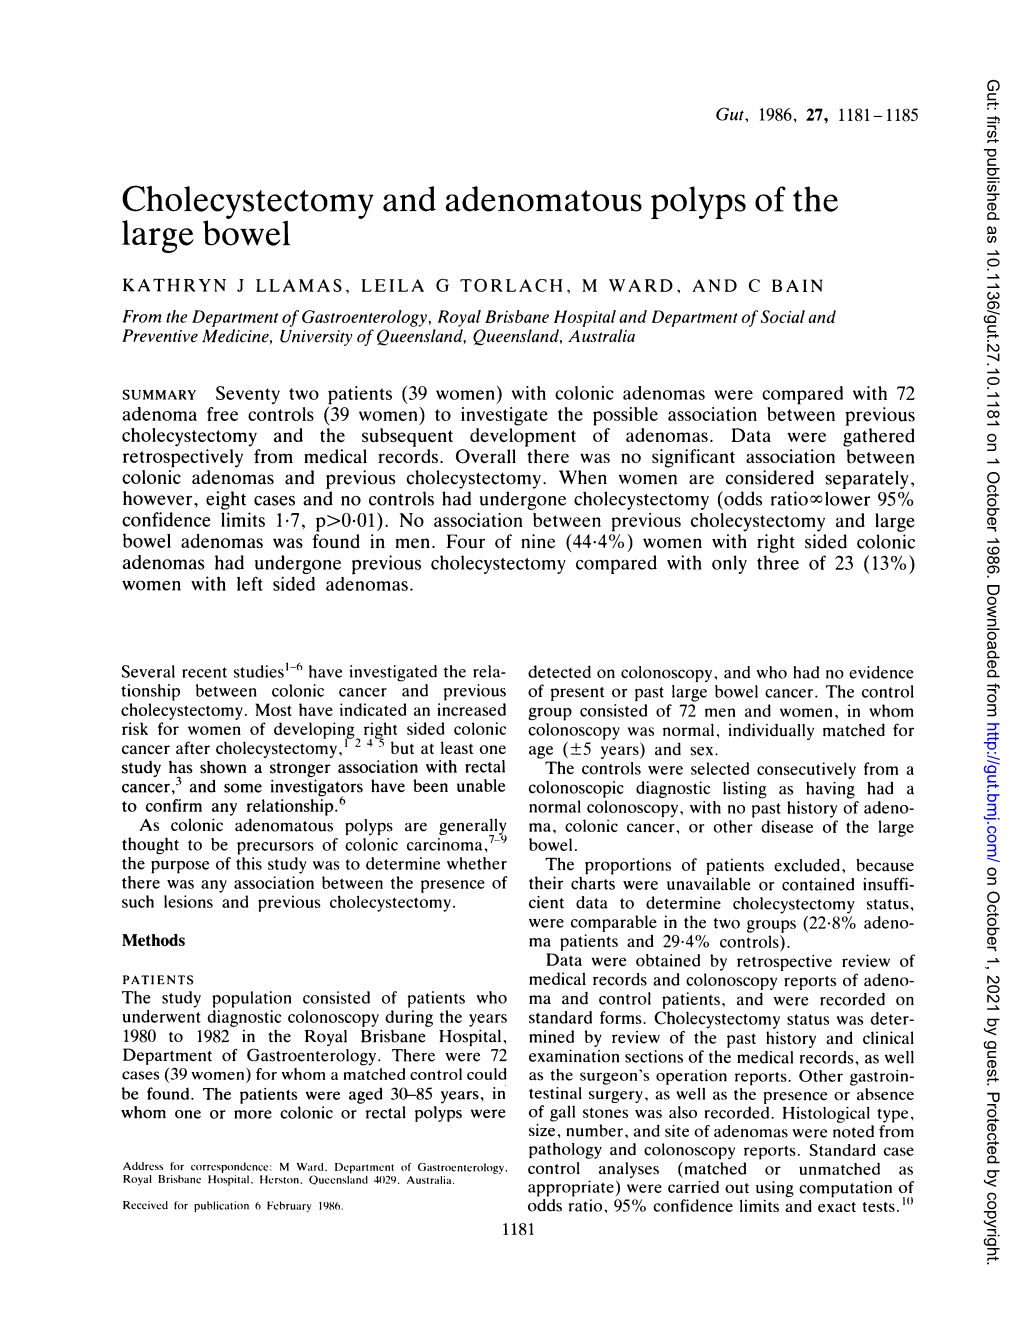 Cholecystectomy and Adenomatous Polyps of the Large Bowel